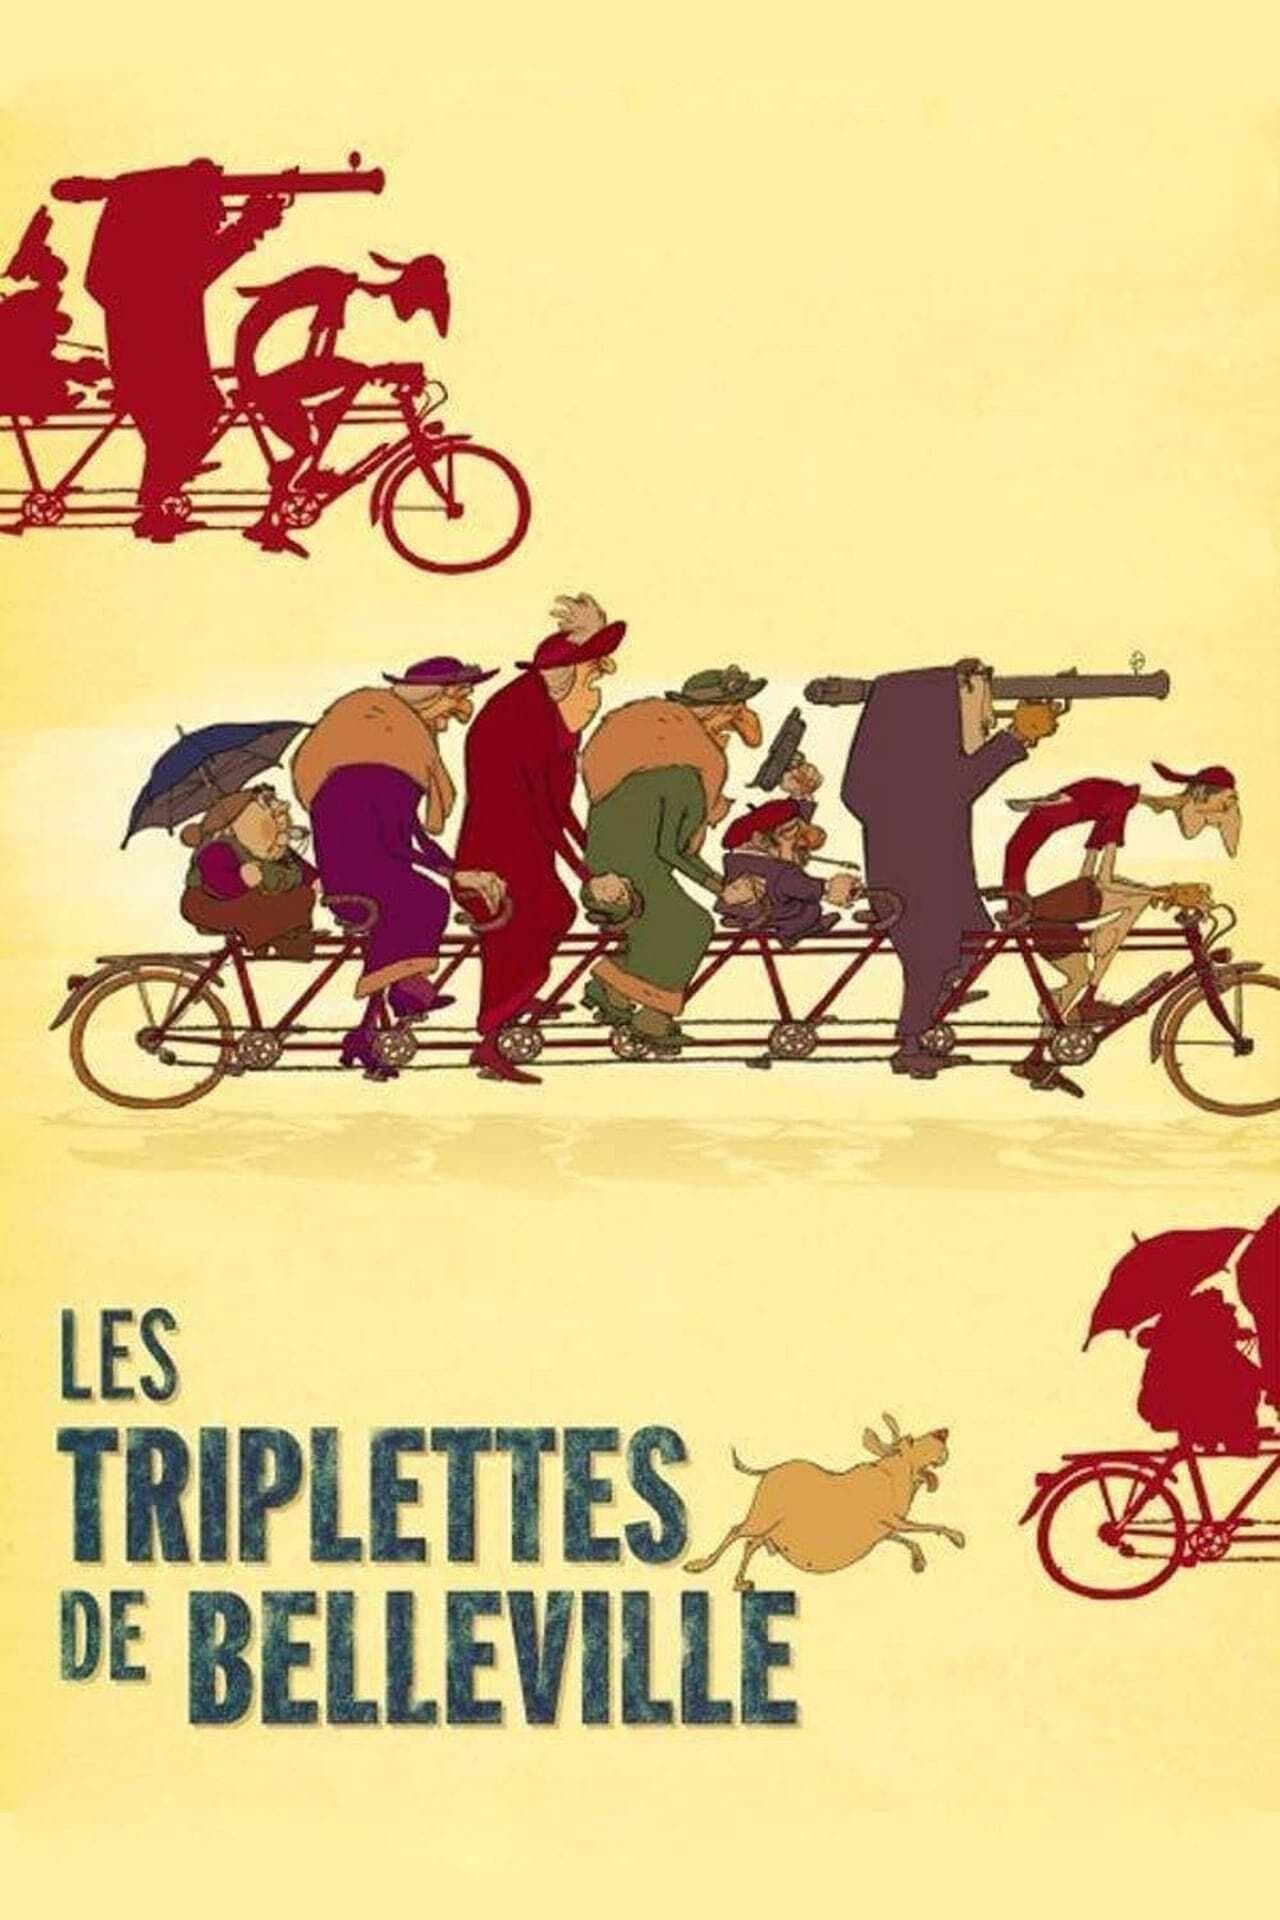 Affiche du film Les Triplettes de Belleville